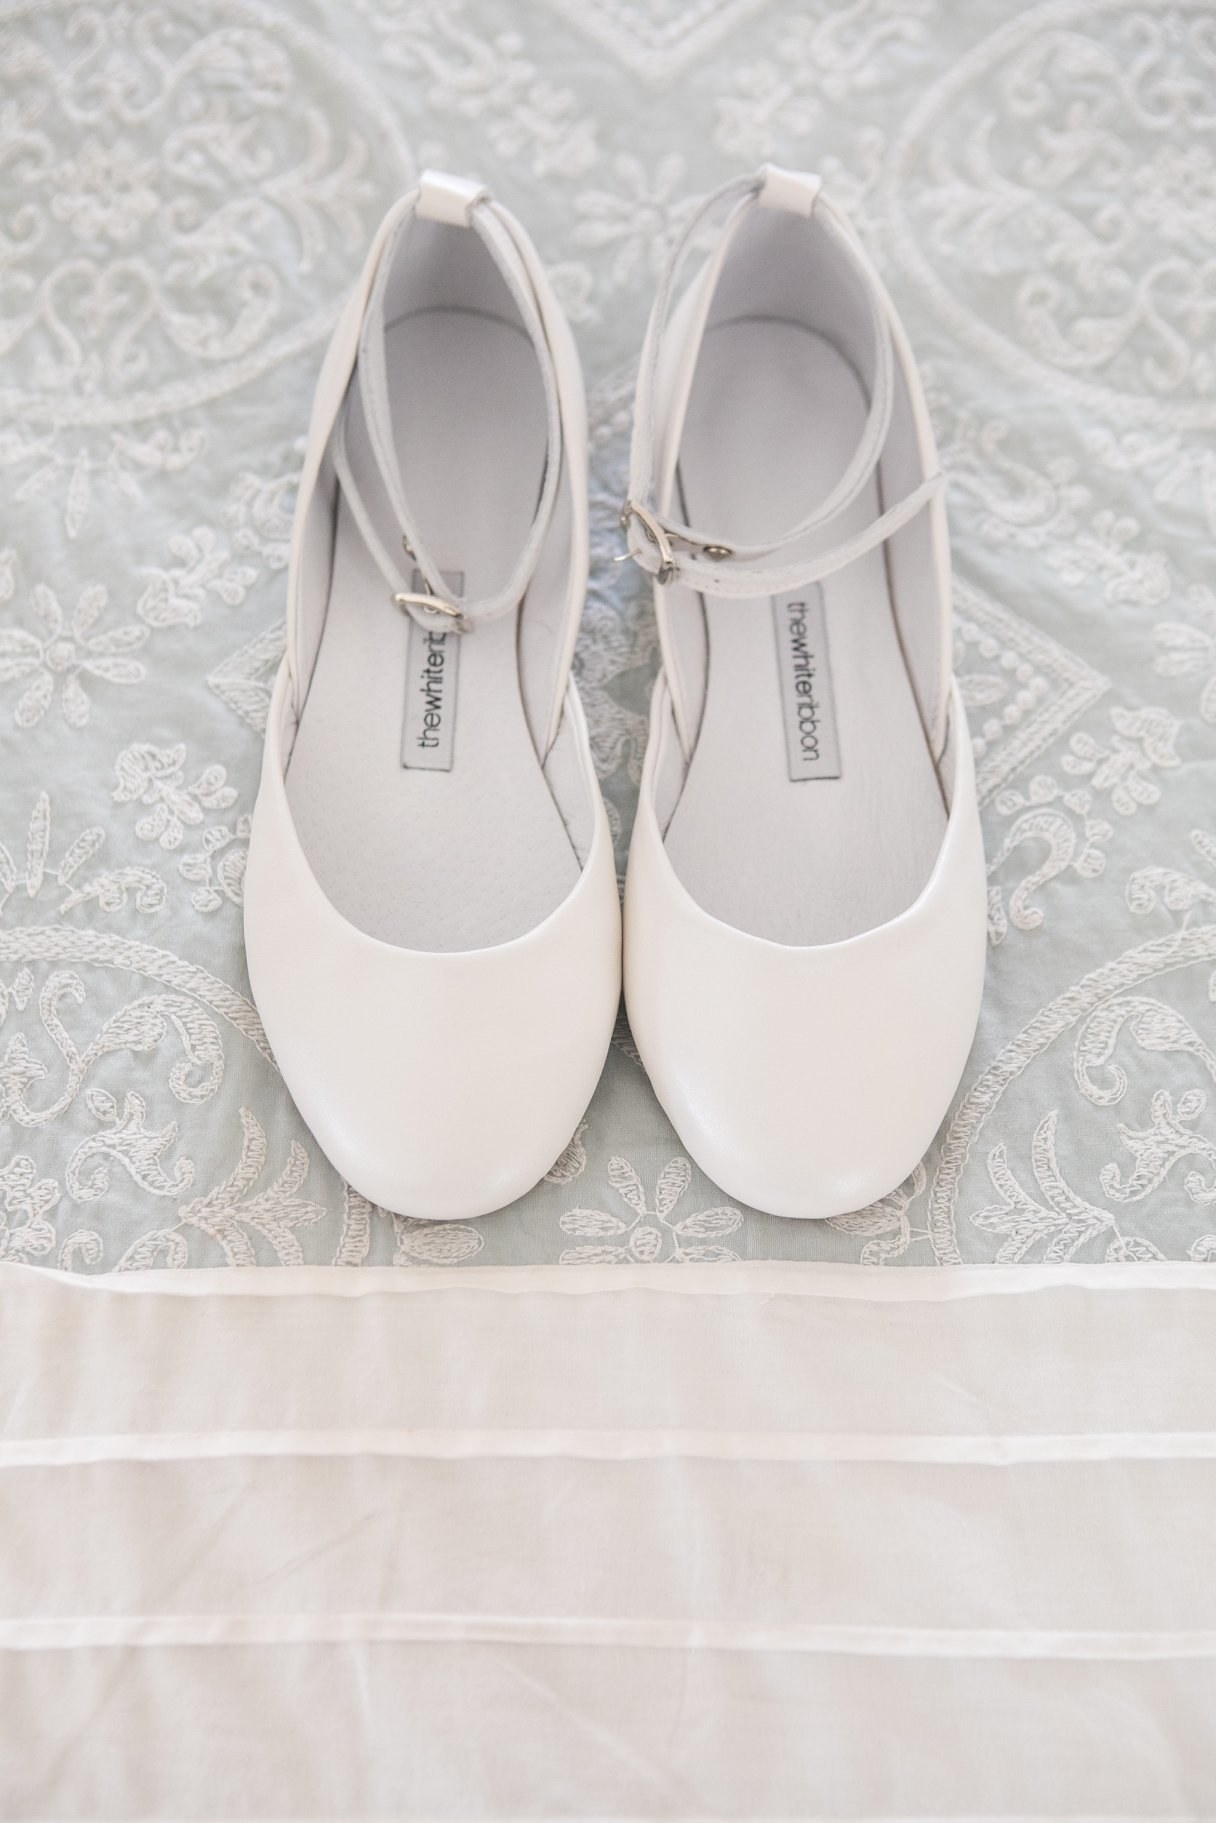 vintage lace bridal shoes